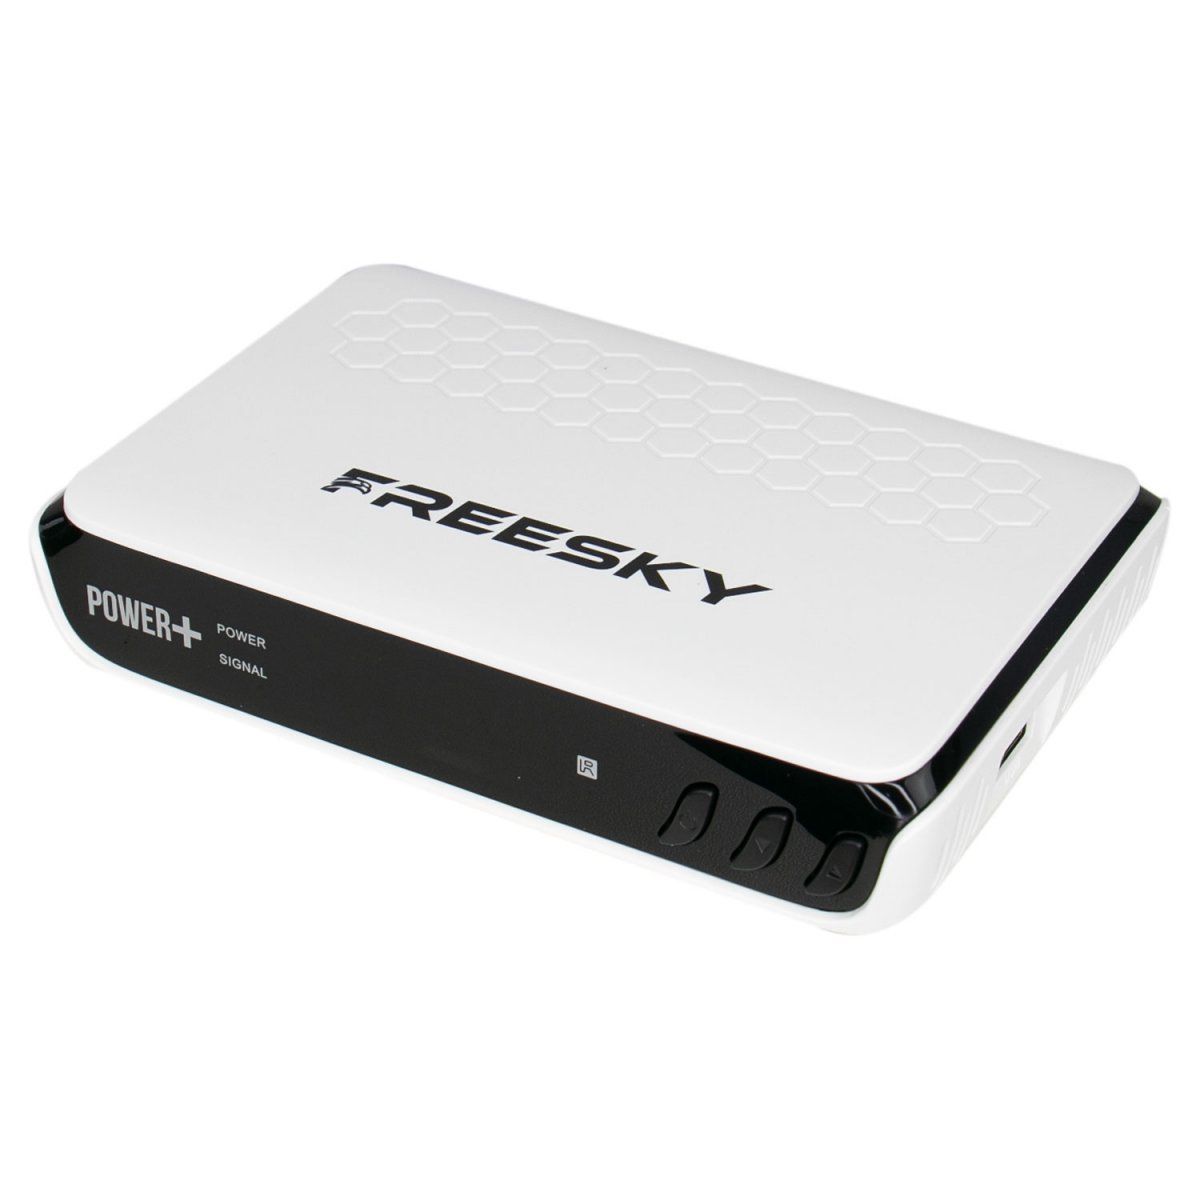 freesky - Freesky Power + Plus Atualização V1.16 Cfe472361cb9f319cf6a7112268ae8ce.jpg-1200x1200